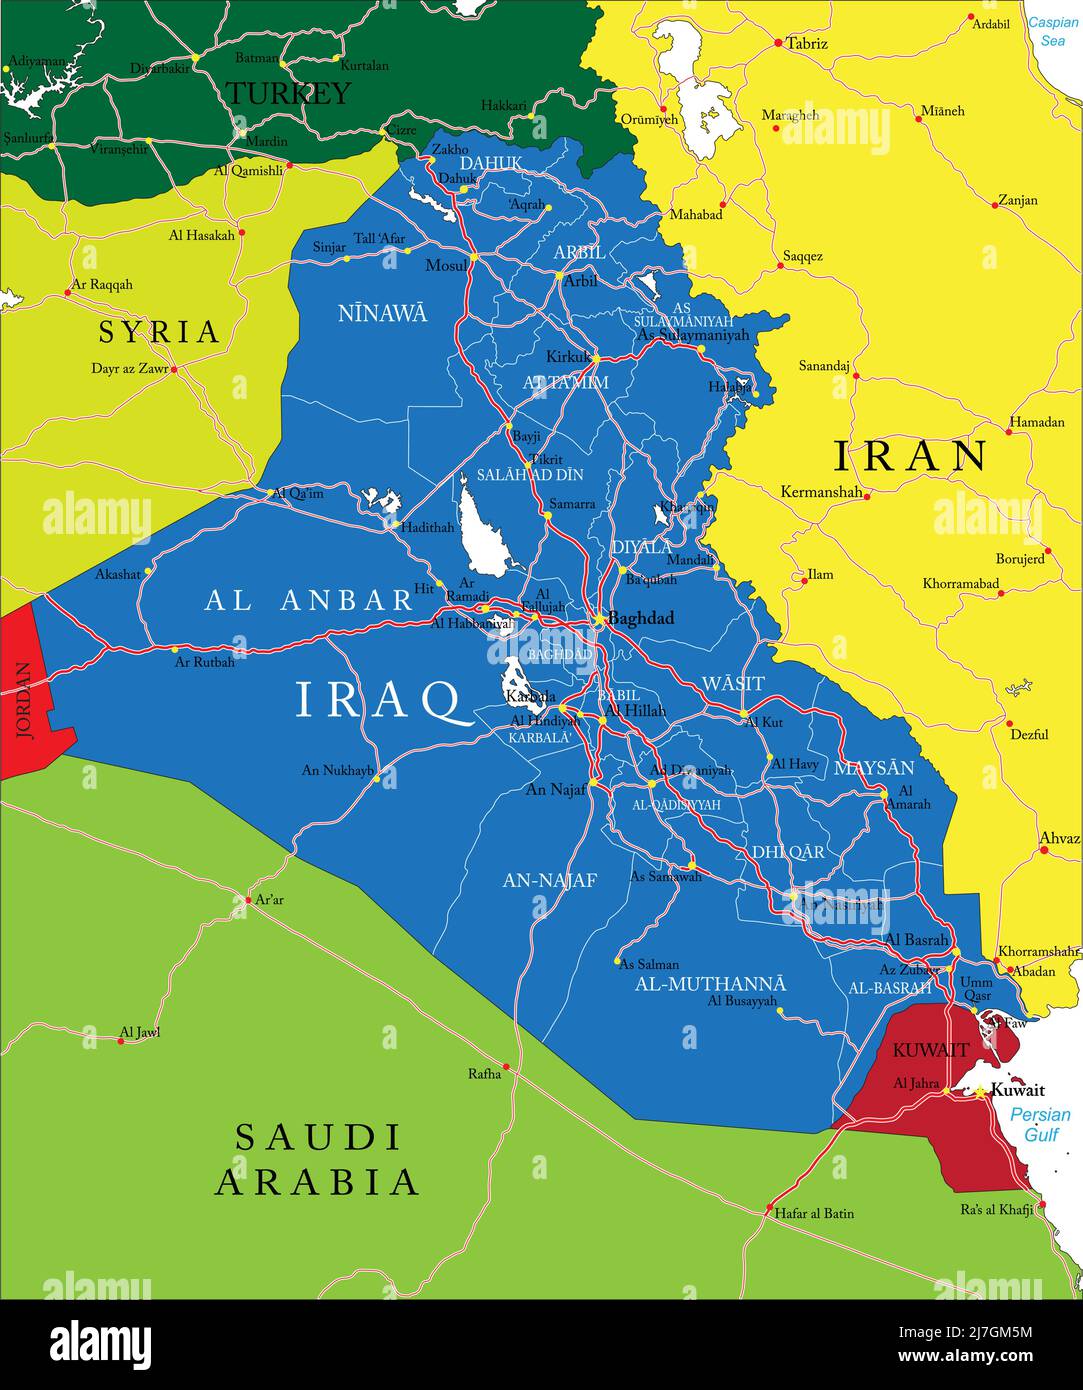 Iraq Mappa vettoriale molto dettagliata con regioni amministrative, principali città e strade. Illustrazione Vettoriale